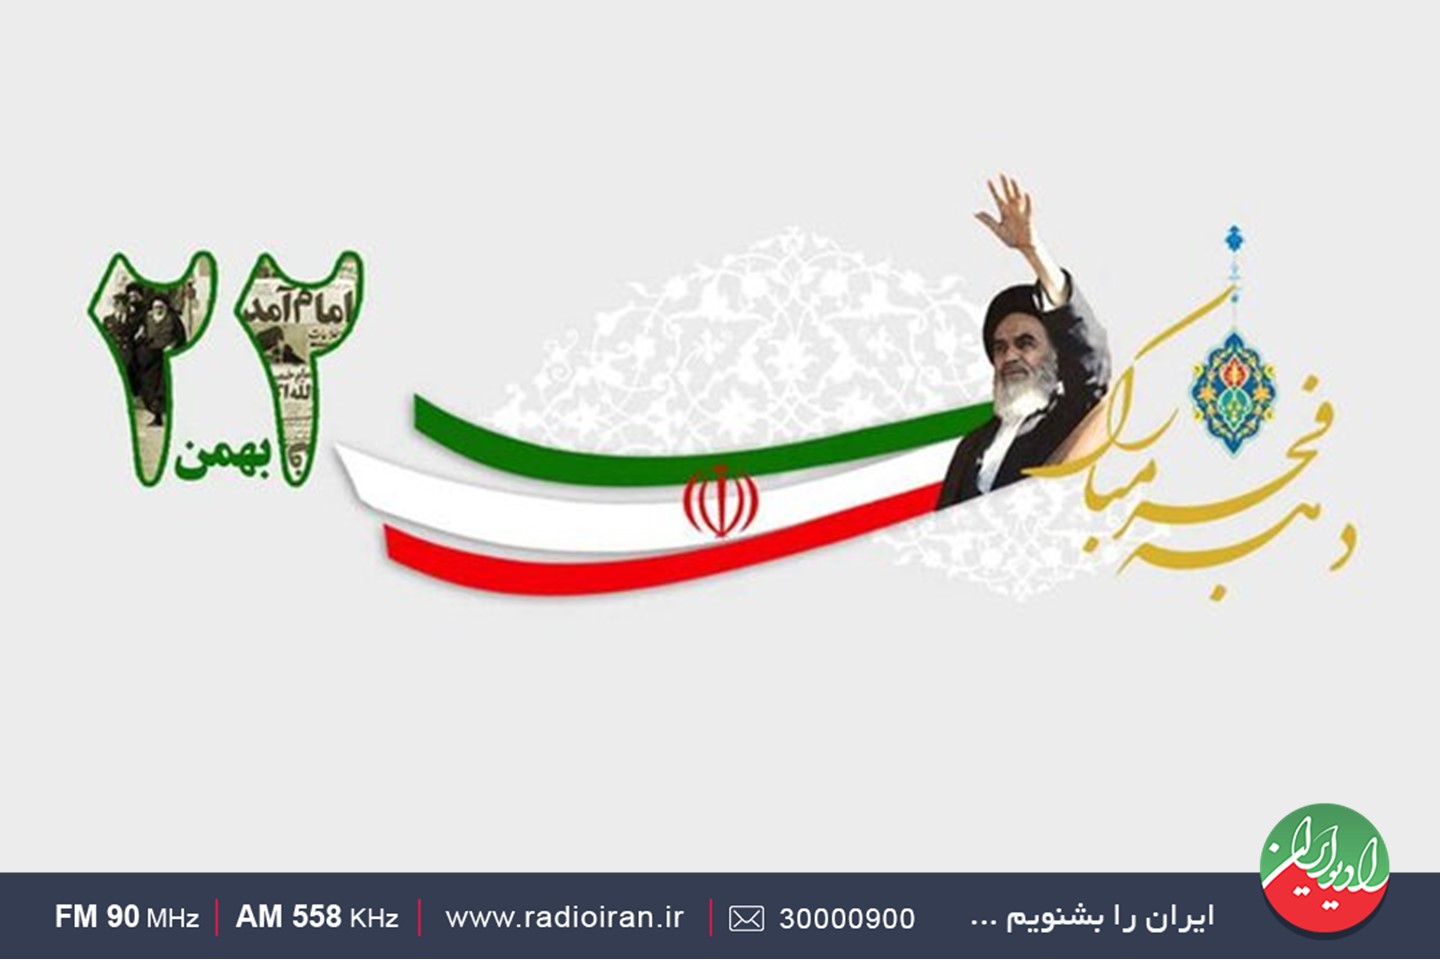 ویژه برنامه های رادیو ایران در یوم الله ۲۲ بهمن